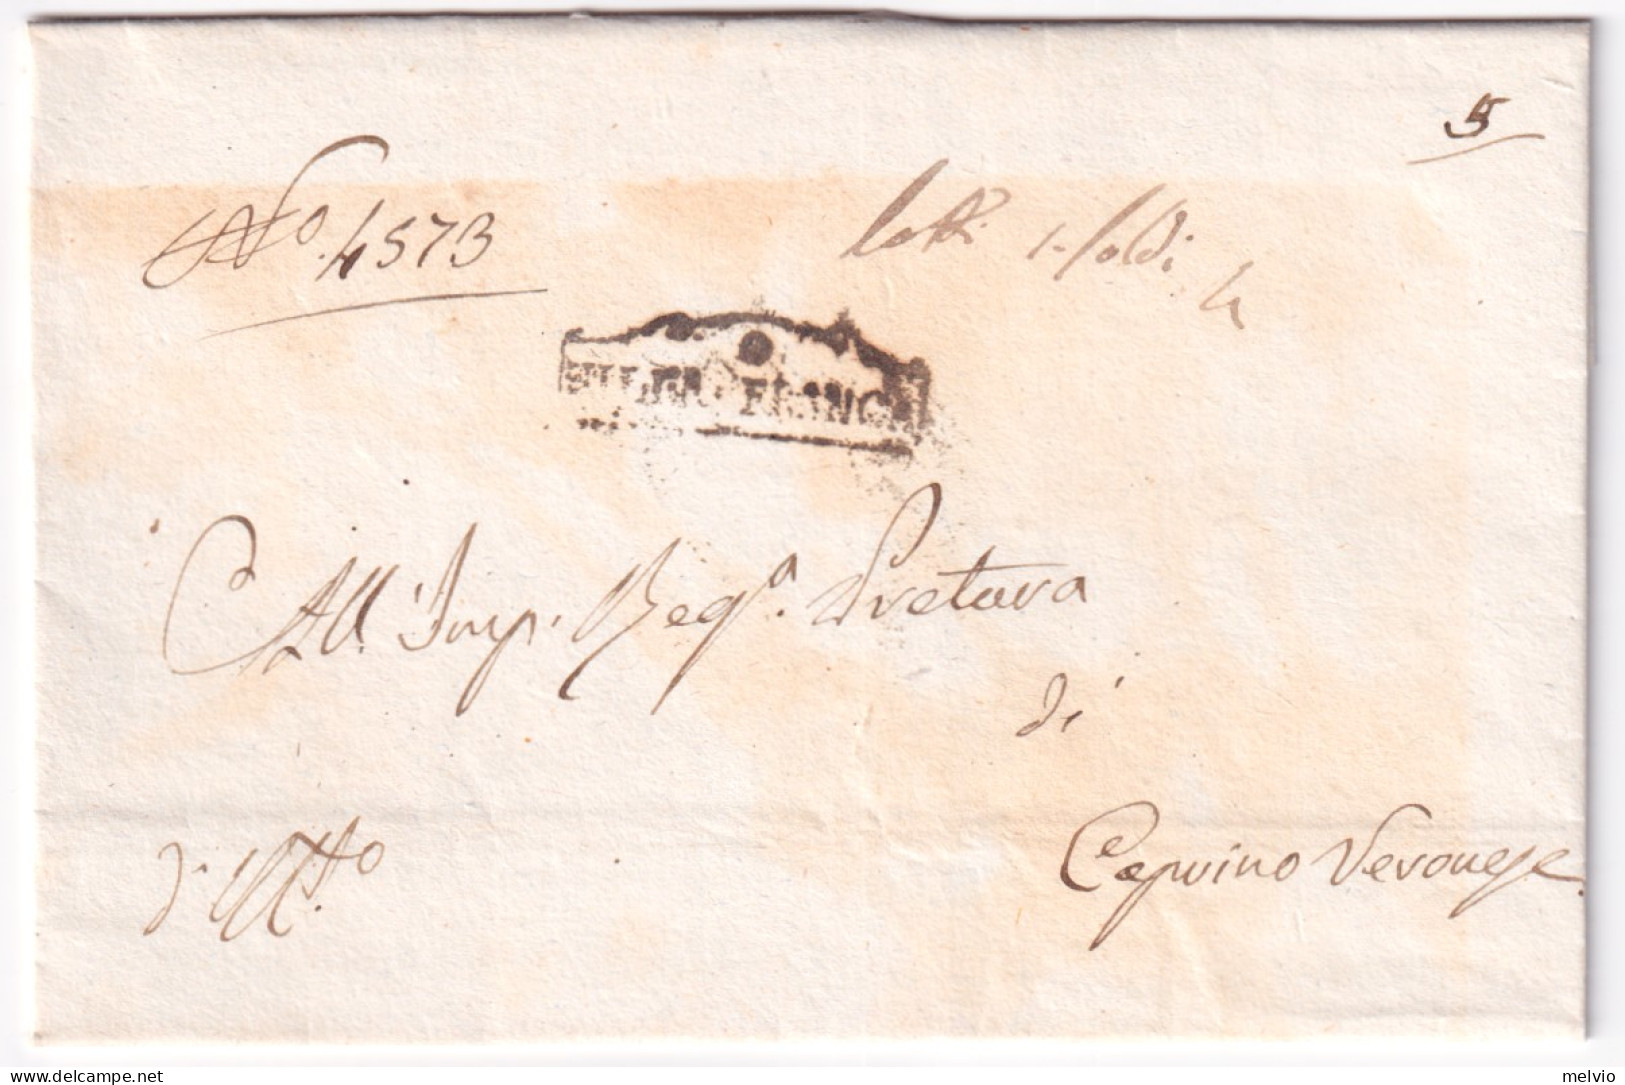 1831-VILLA FRANCA Cartella (28.9) Su Lettera Soprascritta - 1. ...-1850 Prephilately